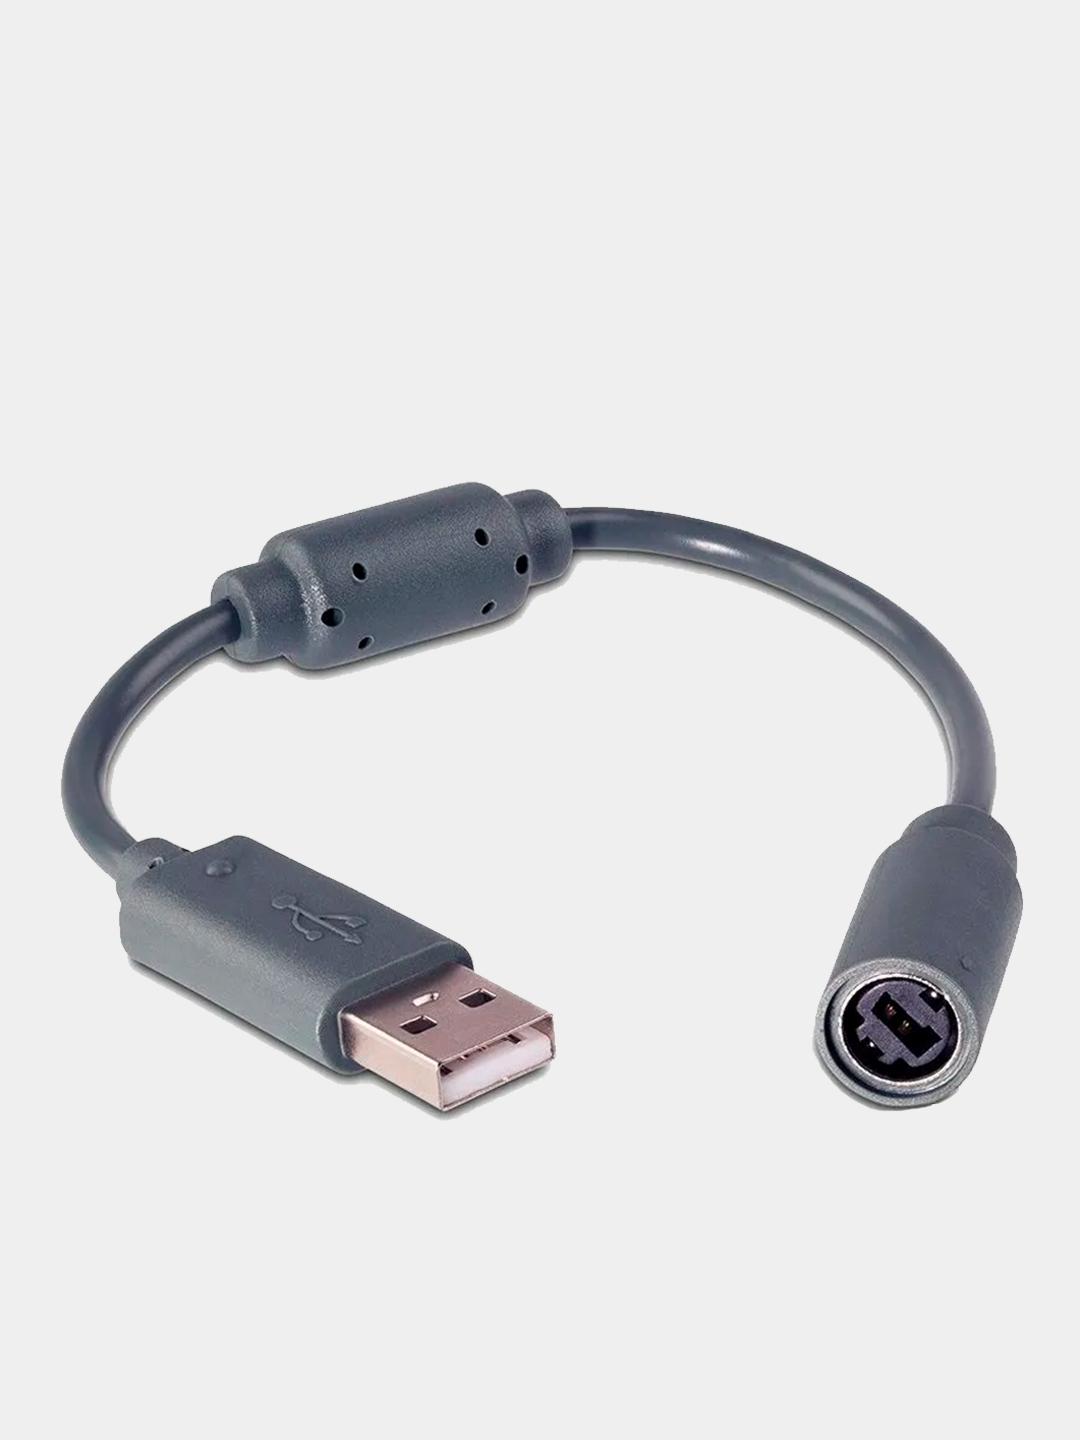 USB переходник-адаптер геймпада Xbox 360. Xbox 360 геймпад переходник на USB. Переходник Xbox 360 на USB для геймпада. Провод переходник Xbox 360 PC. Адаптер пк геймпада